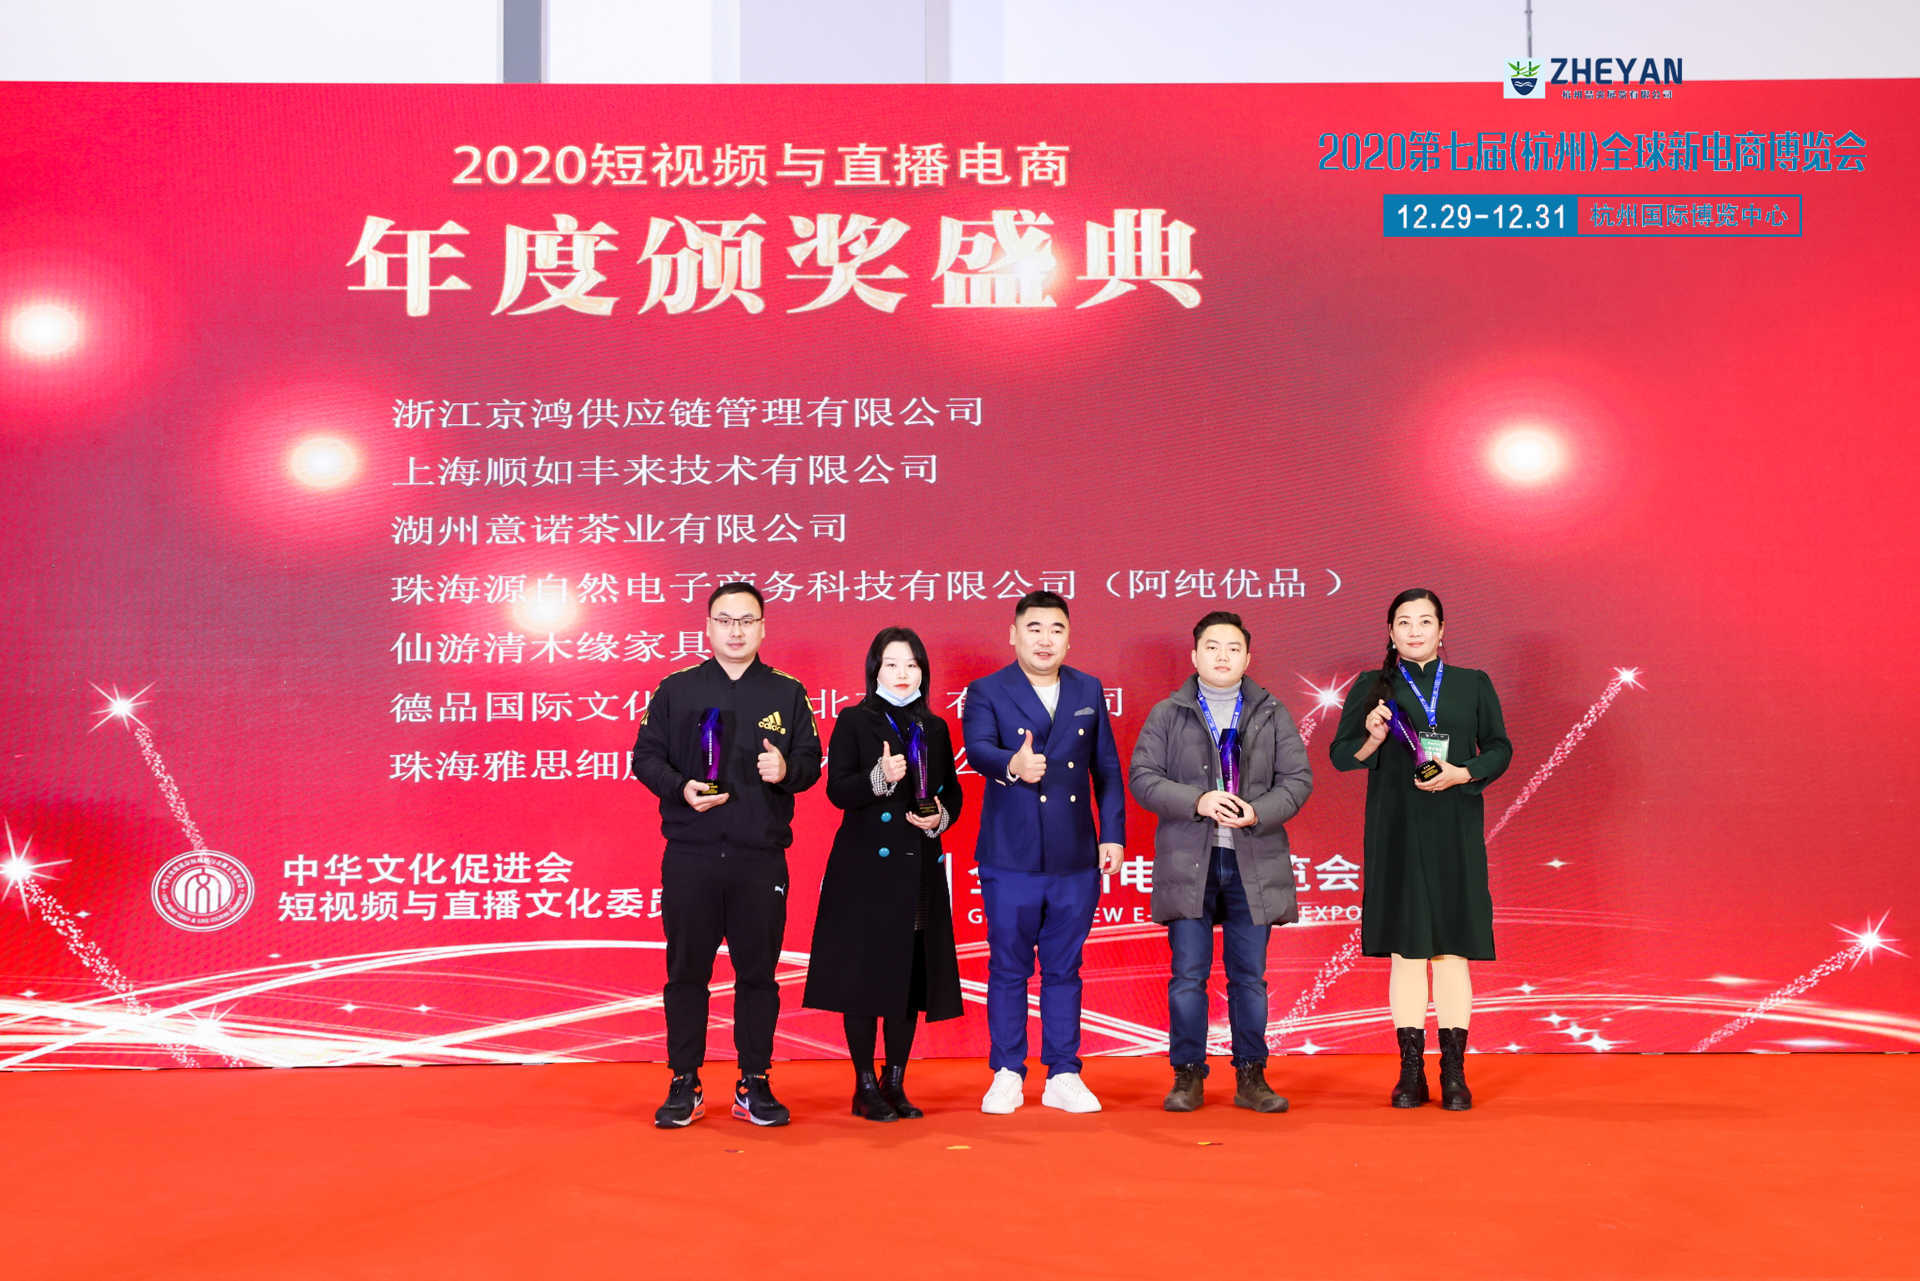 微商展 2021年北京微商博览会 上海吉炎展览有限公司